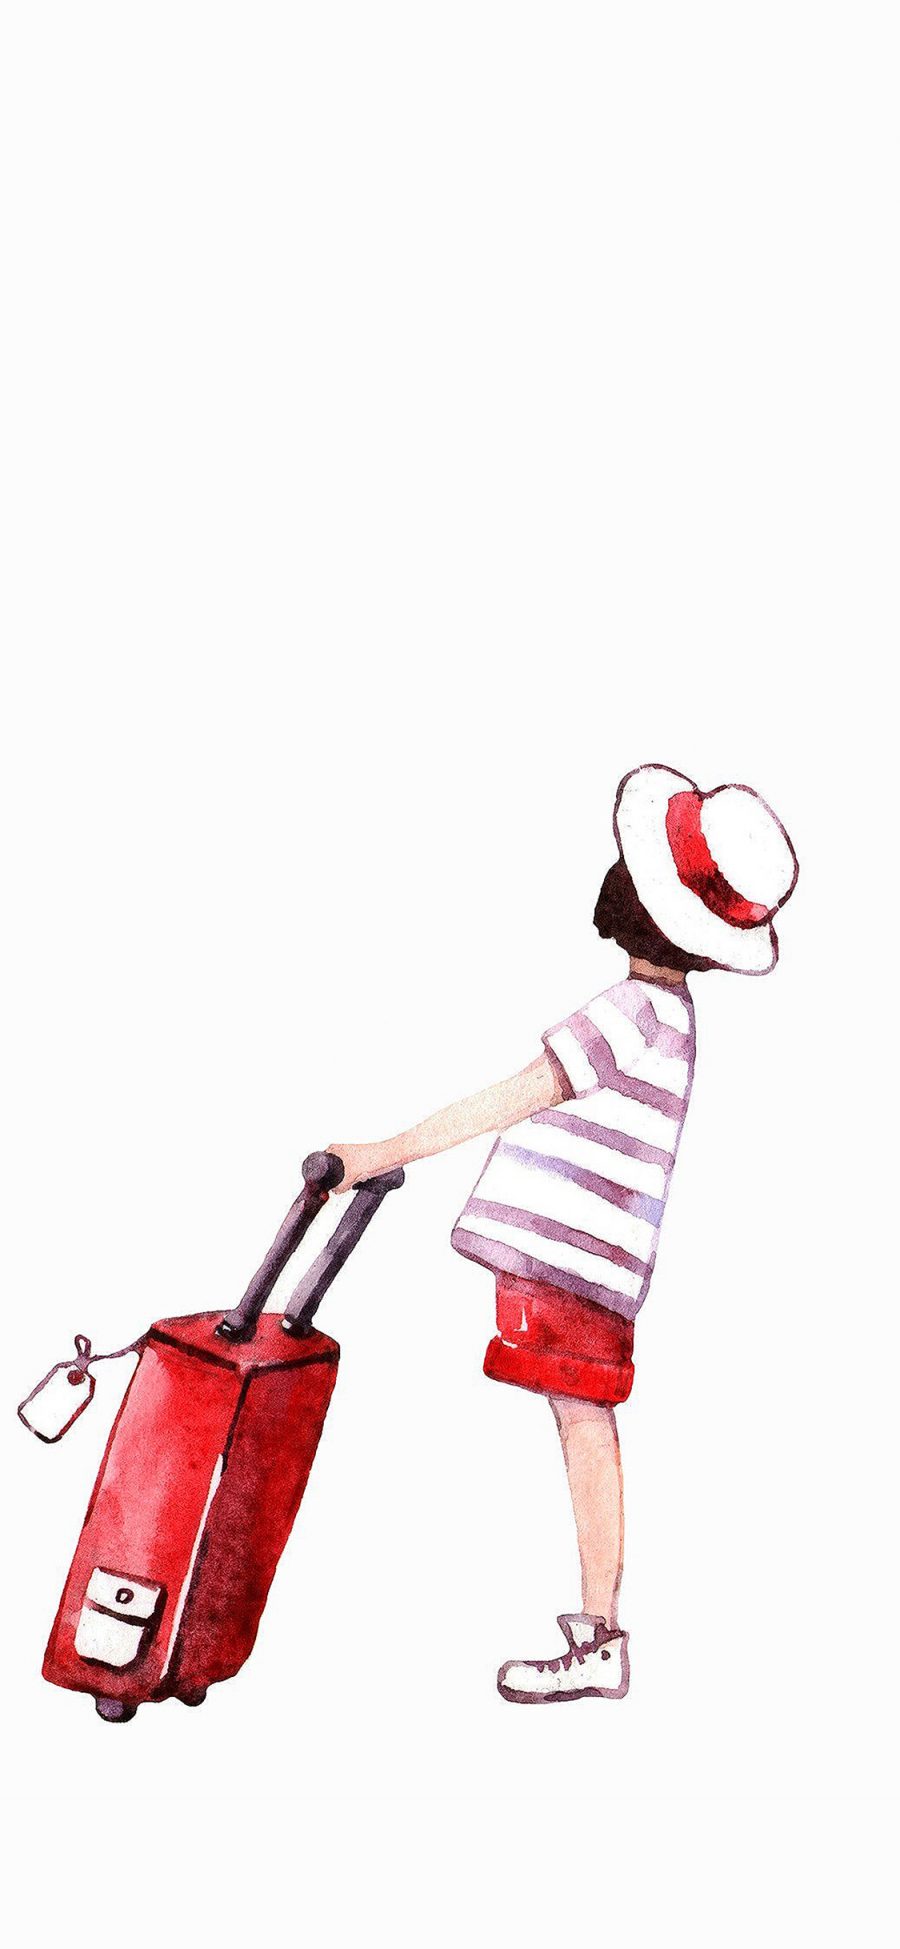 [2436×1125]帽子 红旅行 行李箱 彩色 苹果手机动漫壁纸图片